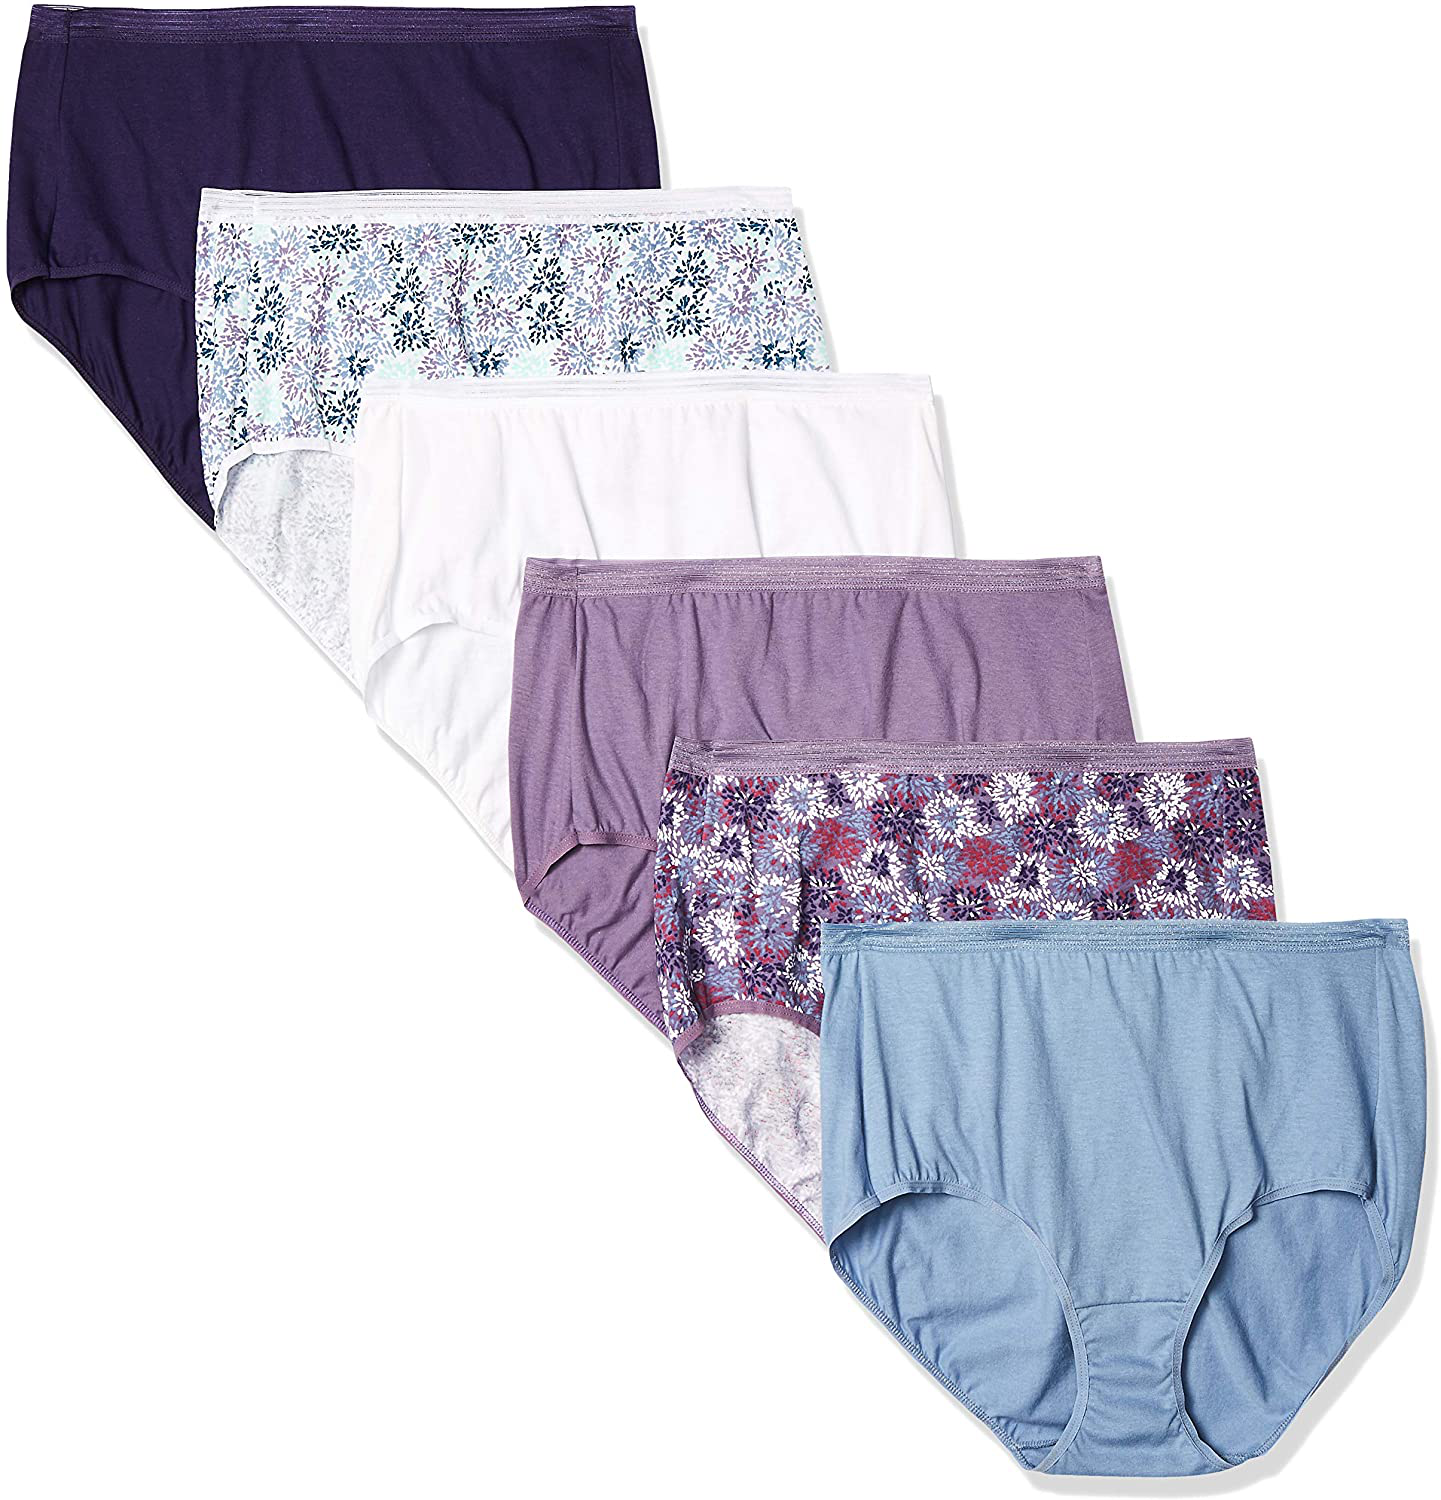 Hanes Women's Signature Breathe Cotton Brief Underwear 6-Pack – MODAndME